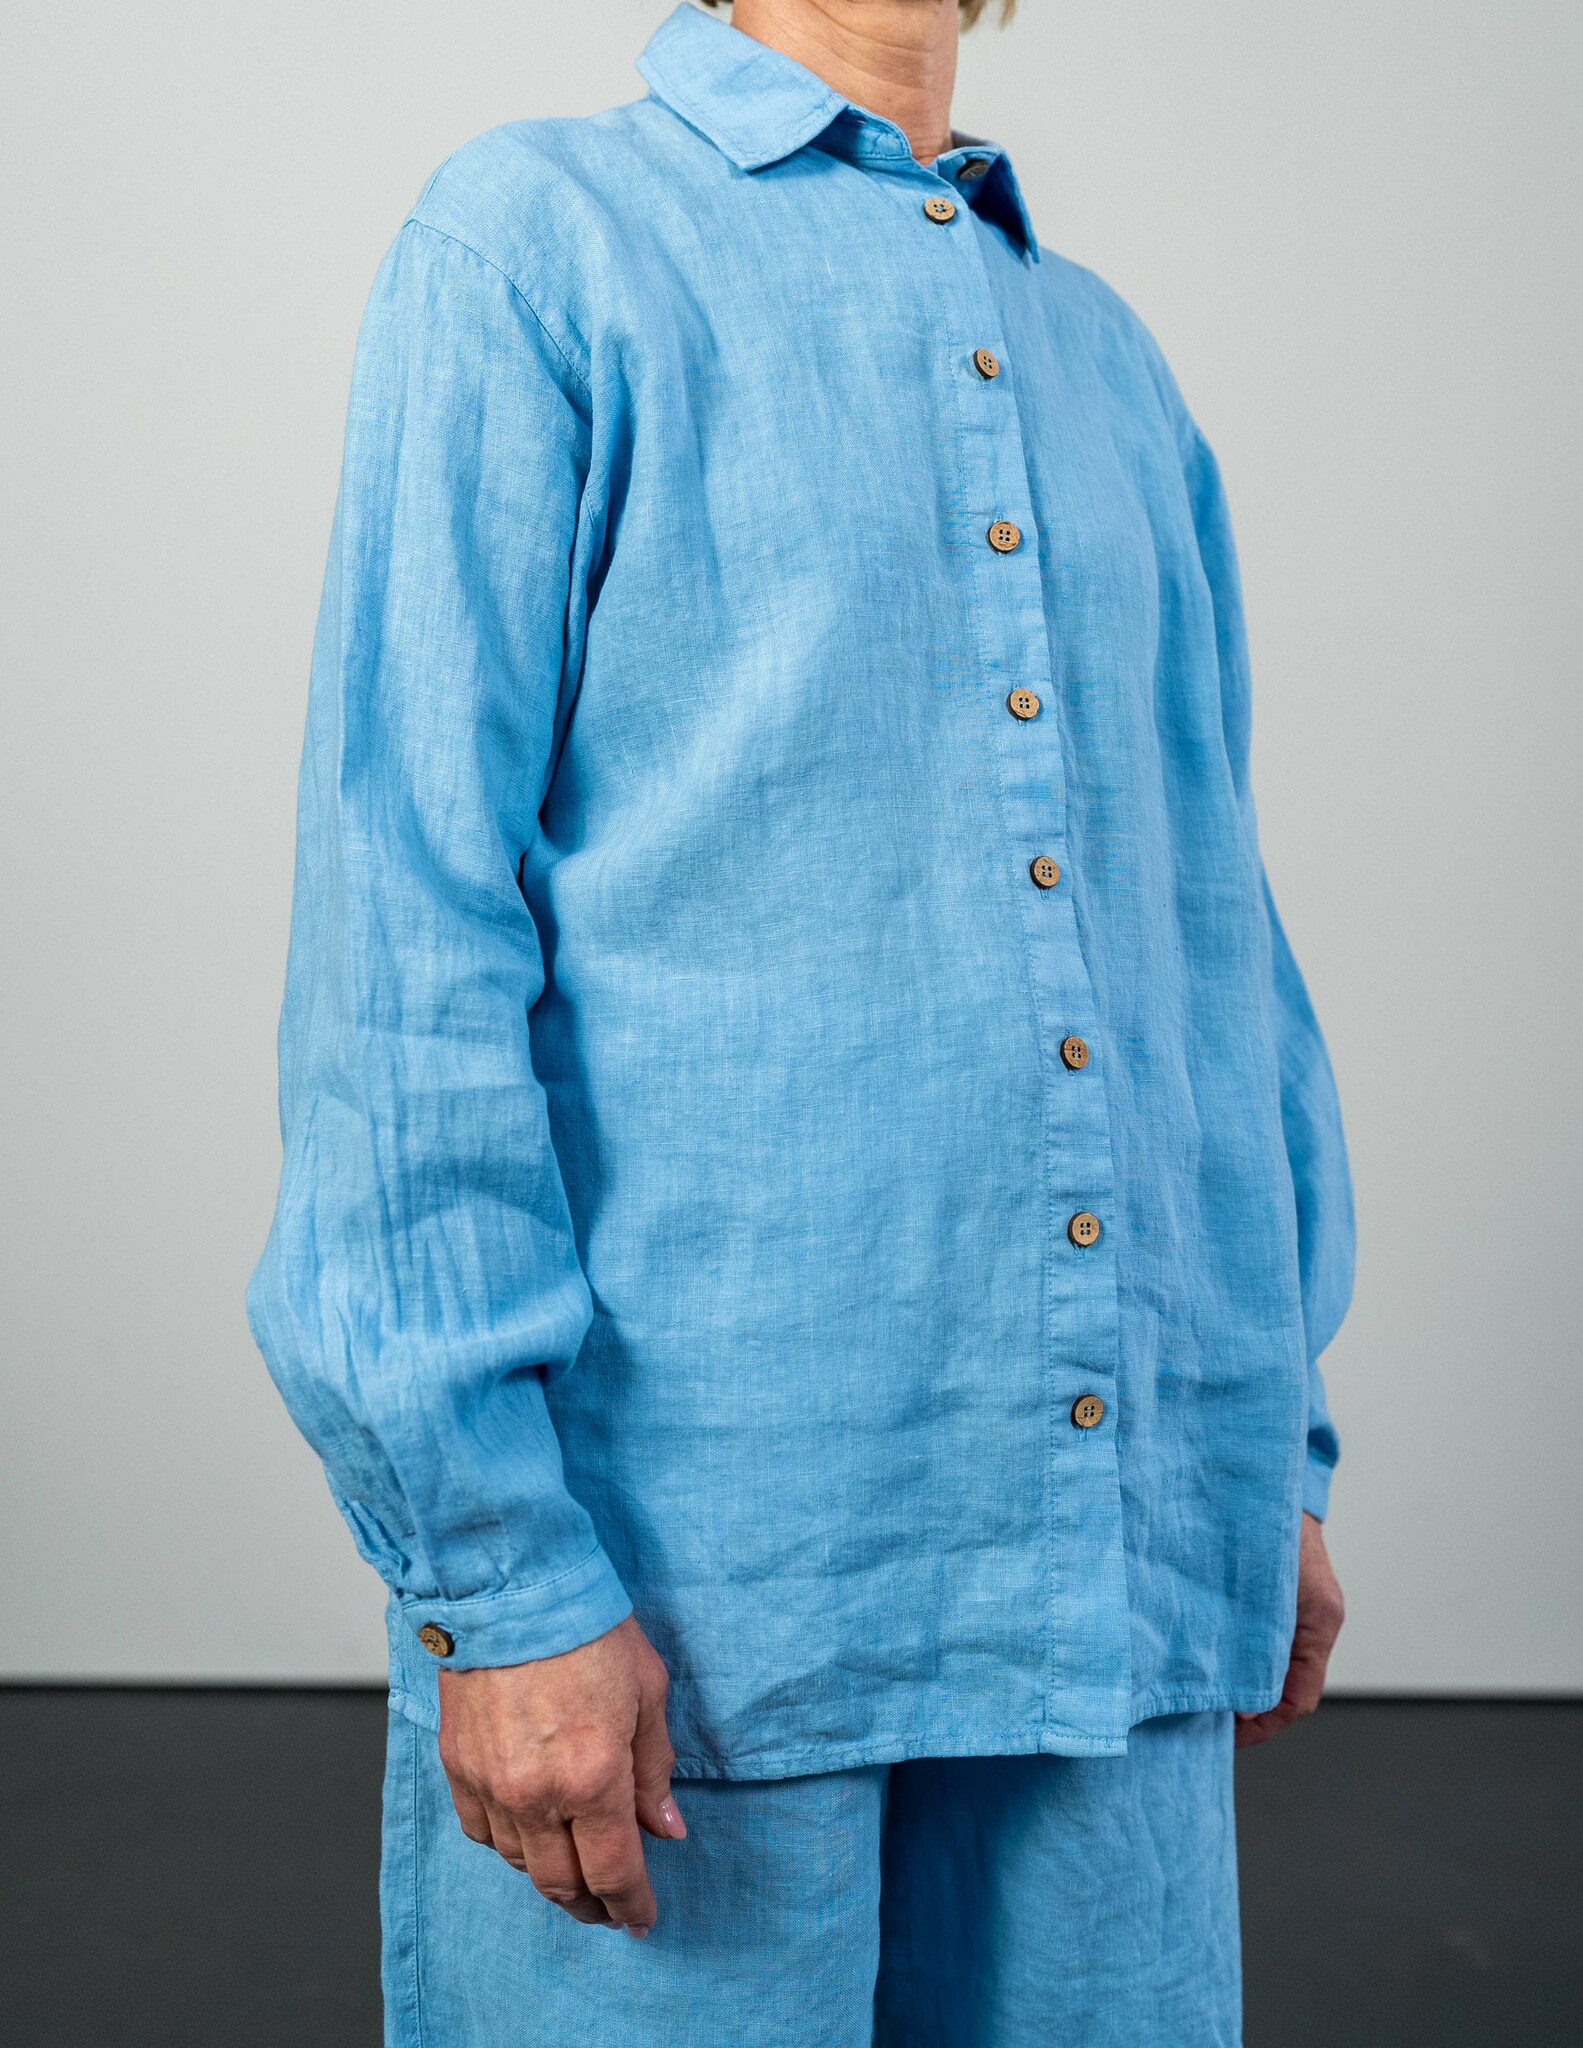 Hållbar linneskjorta blå I Ljus blå linneskjorta i hållbart material I Skjorta i linne dam I Linneskjorta med knappar I Blå linneskjortor dam I Hållbara linnekläder hos svenska SOONA Collection